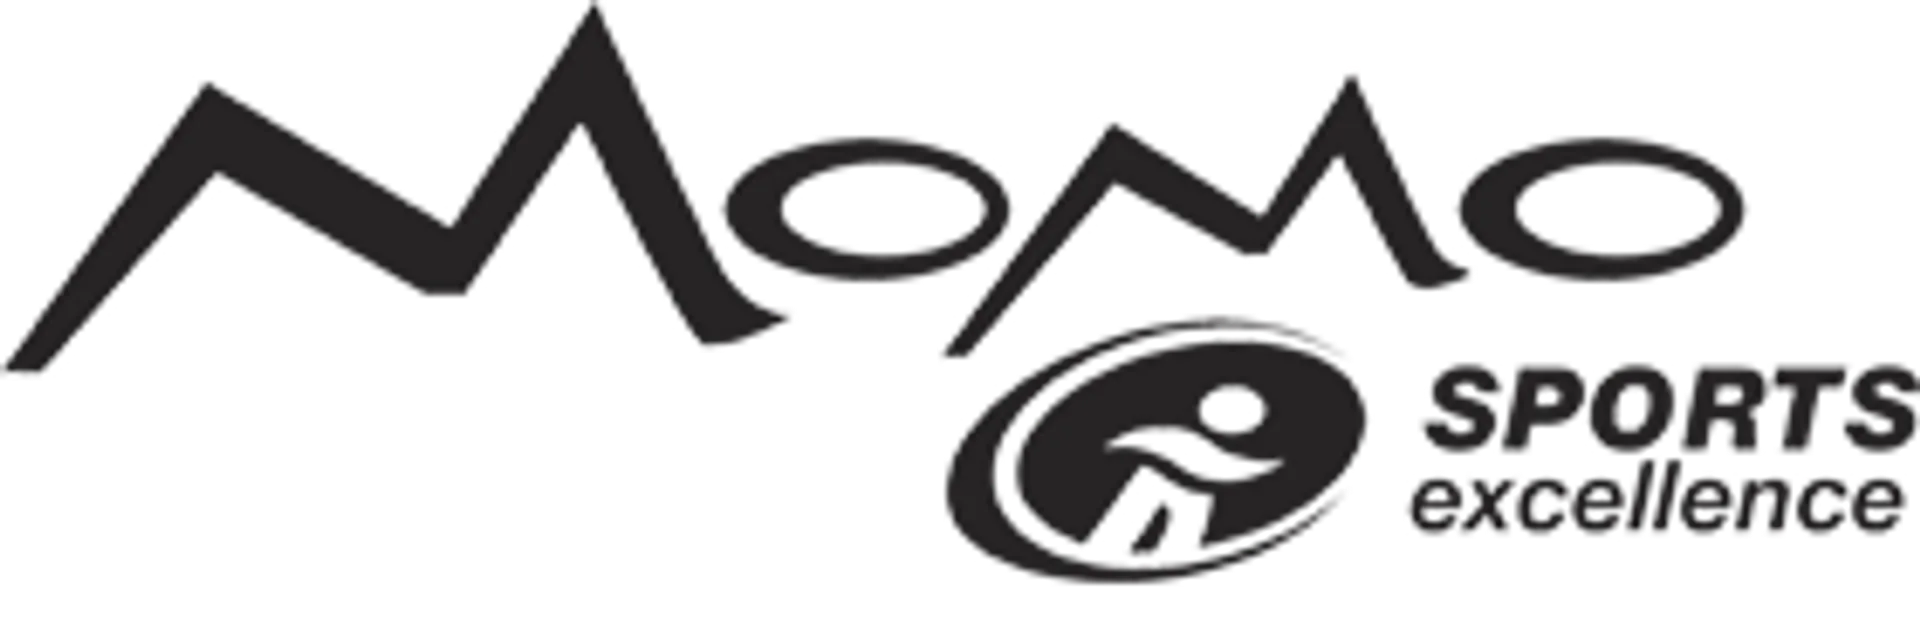 MOMO logo de circulaires